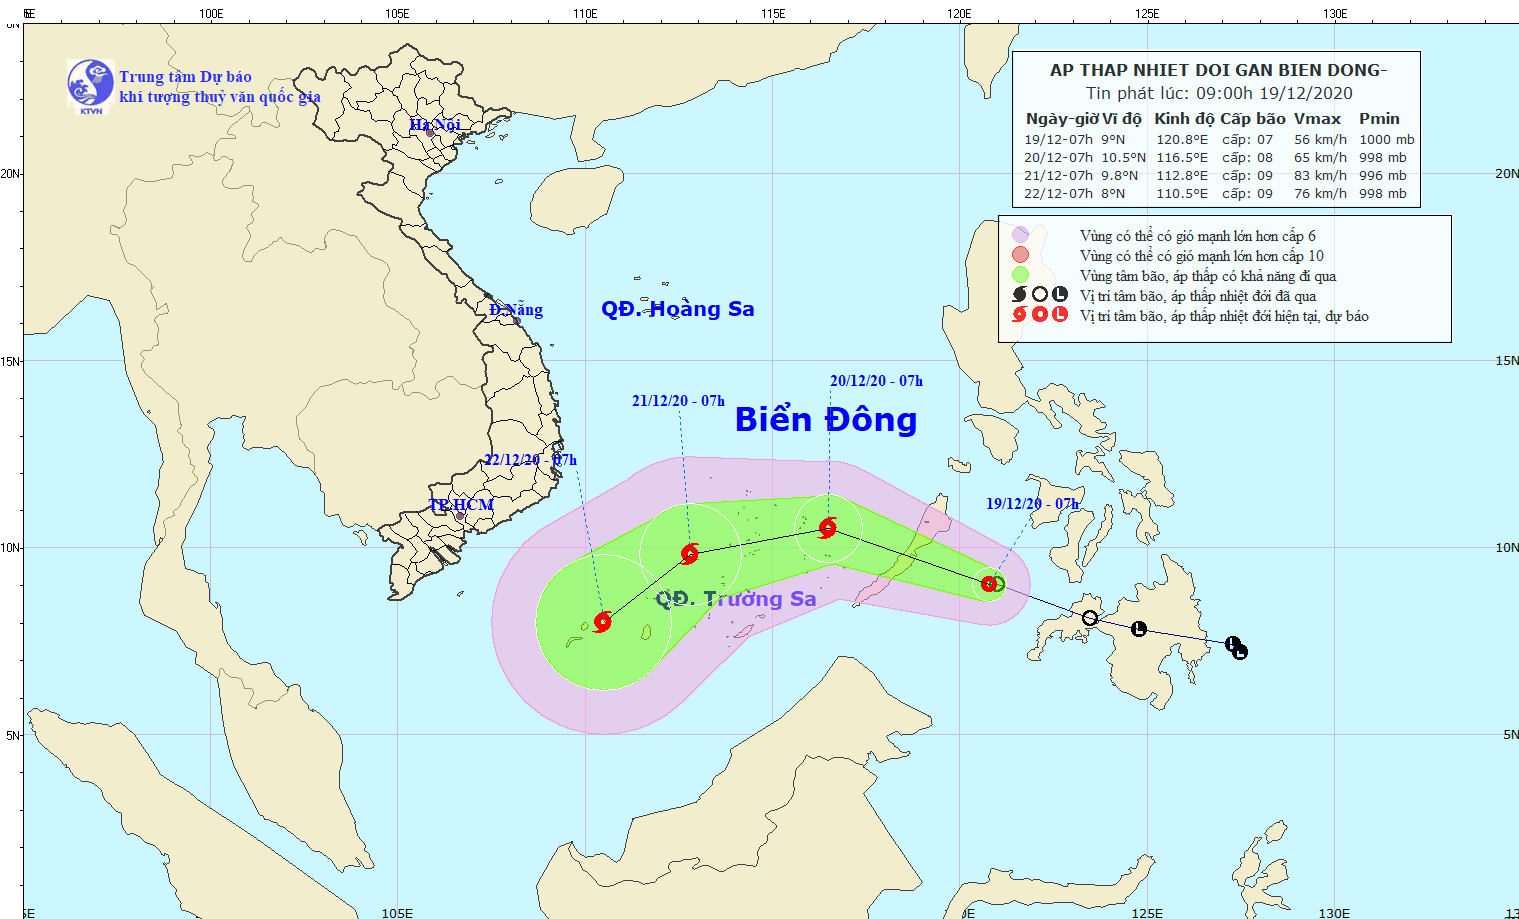 Yêu cầu các tỉnh từ Đà Nẵng đến Cà Mau và Kiên Giang chuẩn bị ứng phó áp thấp nhiệt đới mạnh lên thành bão